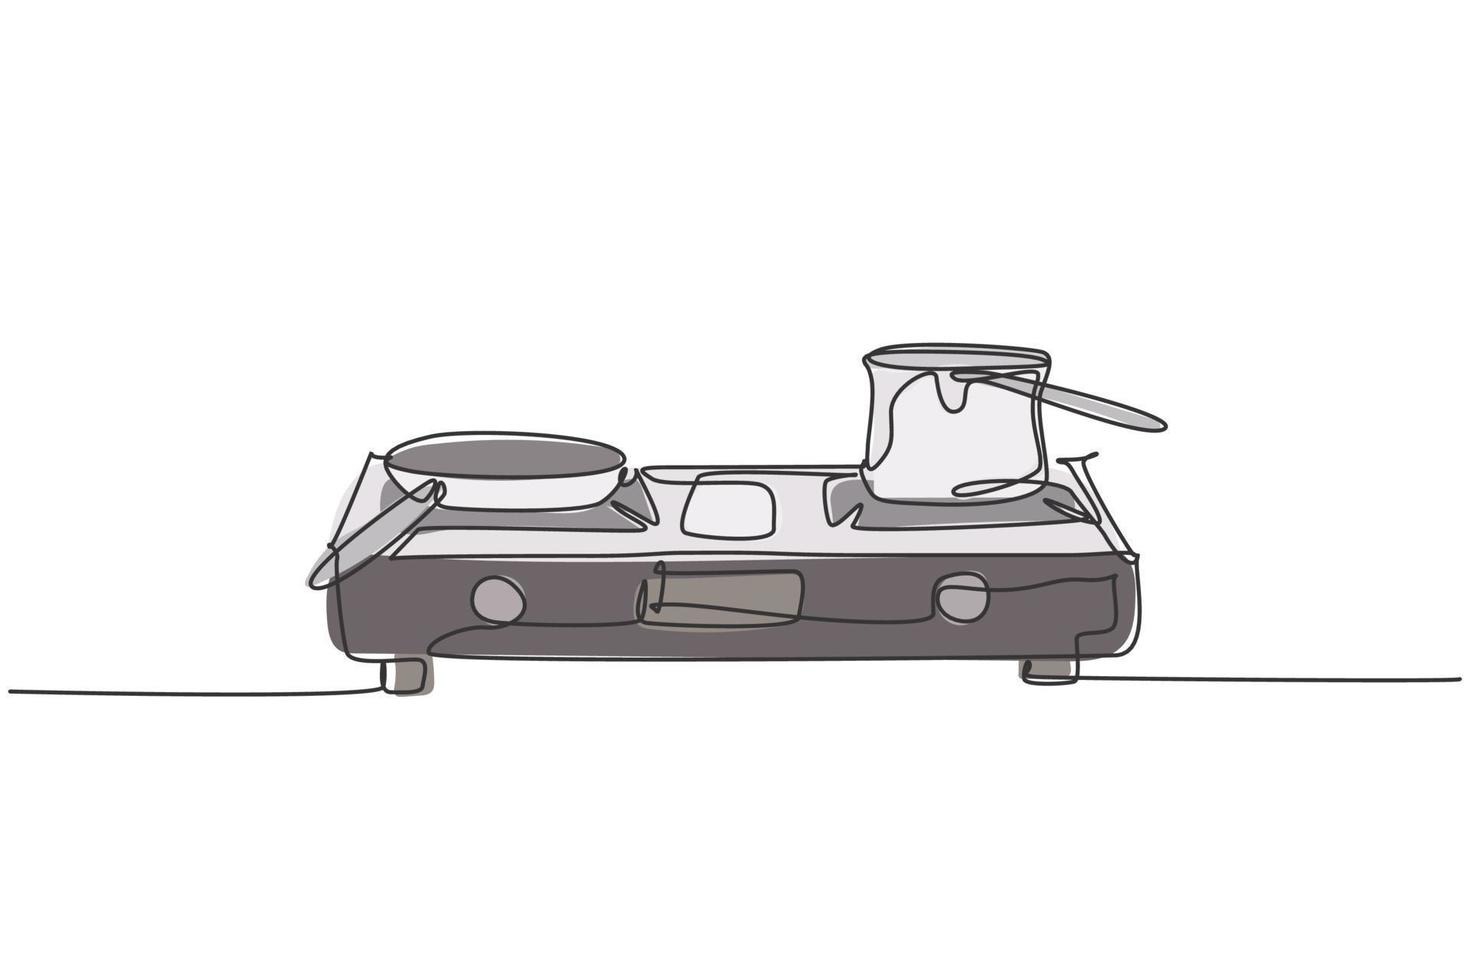 um desenho de linha contínua de fogão a gás com panela de aço inoxidável acima do eletrodoméstico. conceito de modelo de ferramentas domésticas de eletricidade de cozinha. ilustração do gráfico vetorial moderna de desenho de linha única vetor